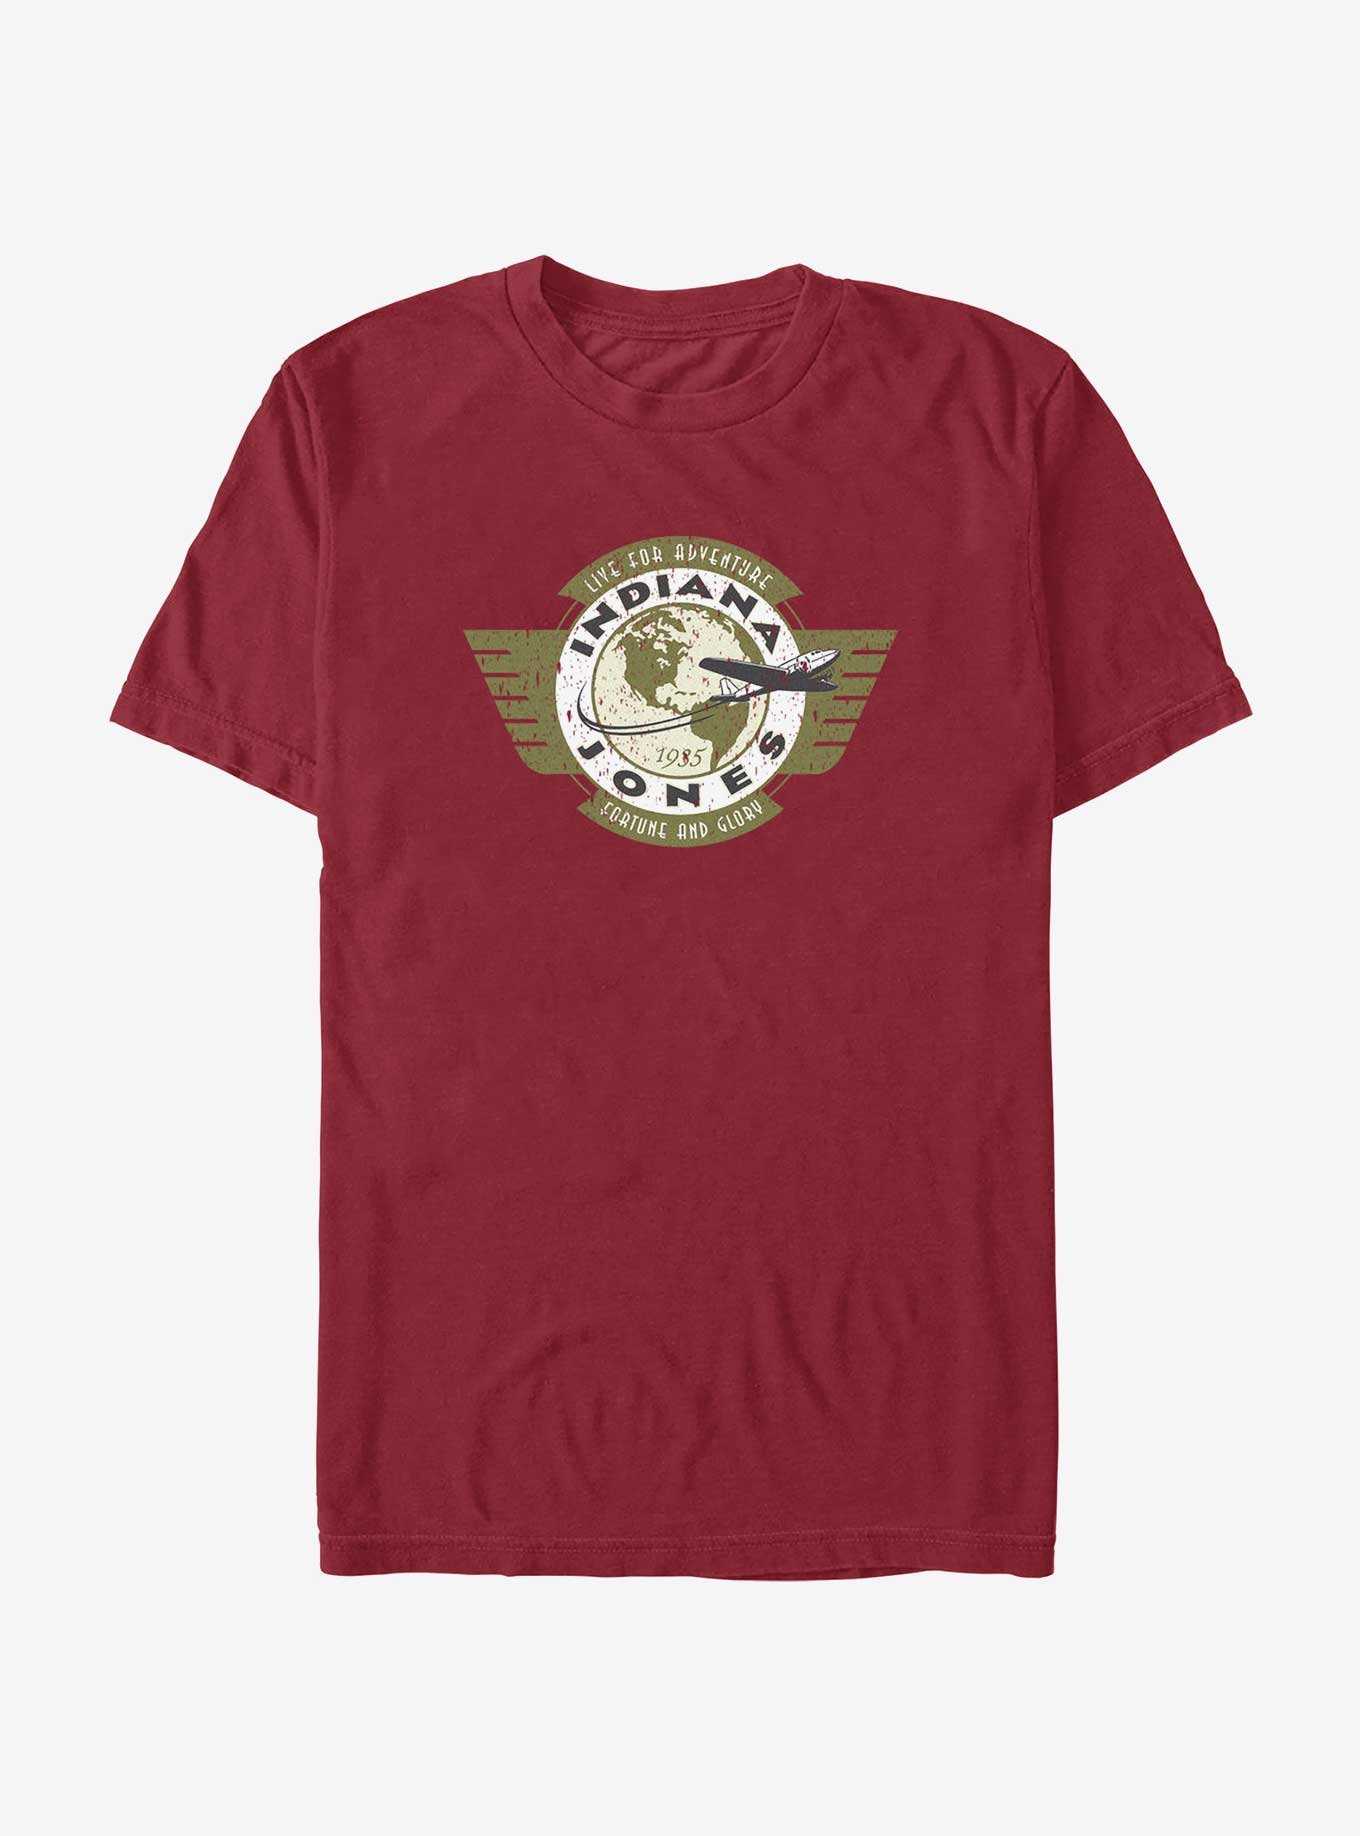 Indiana Jones Live For Adventure Vintage Aviation Badge T-Shirt, , hi-res